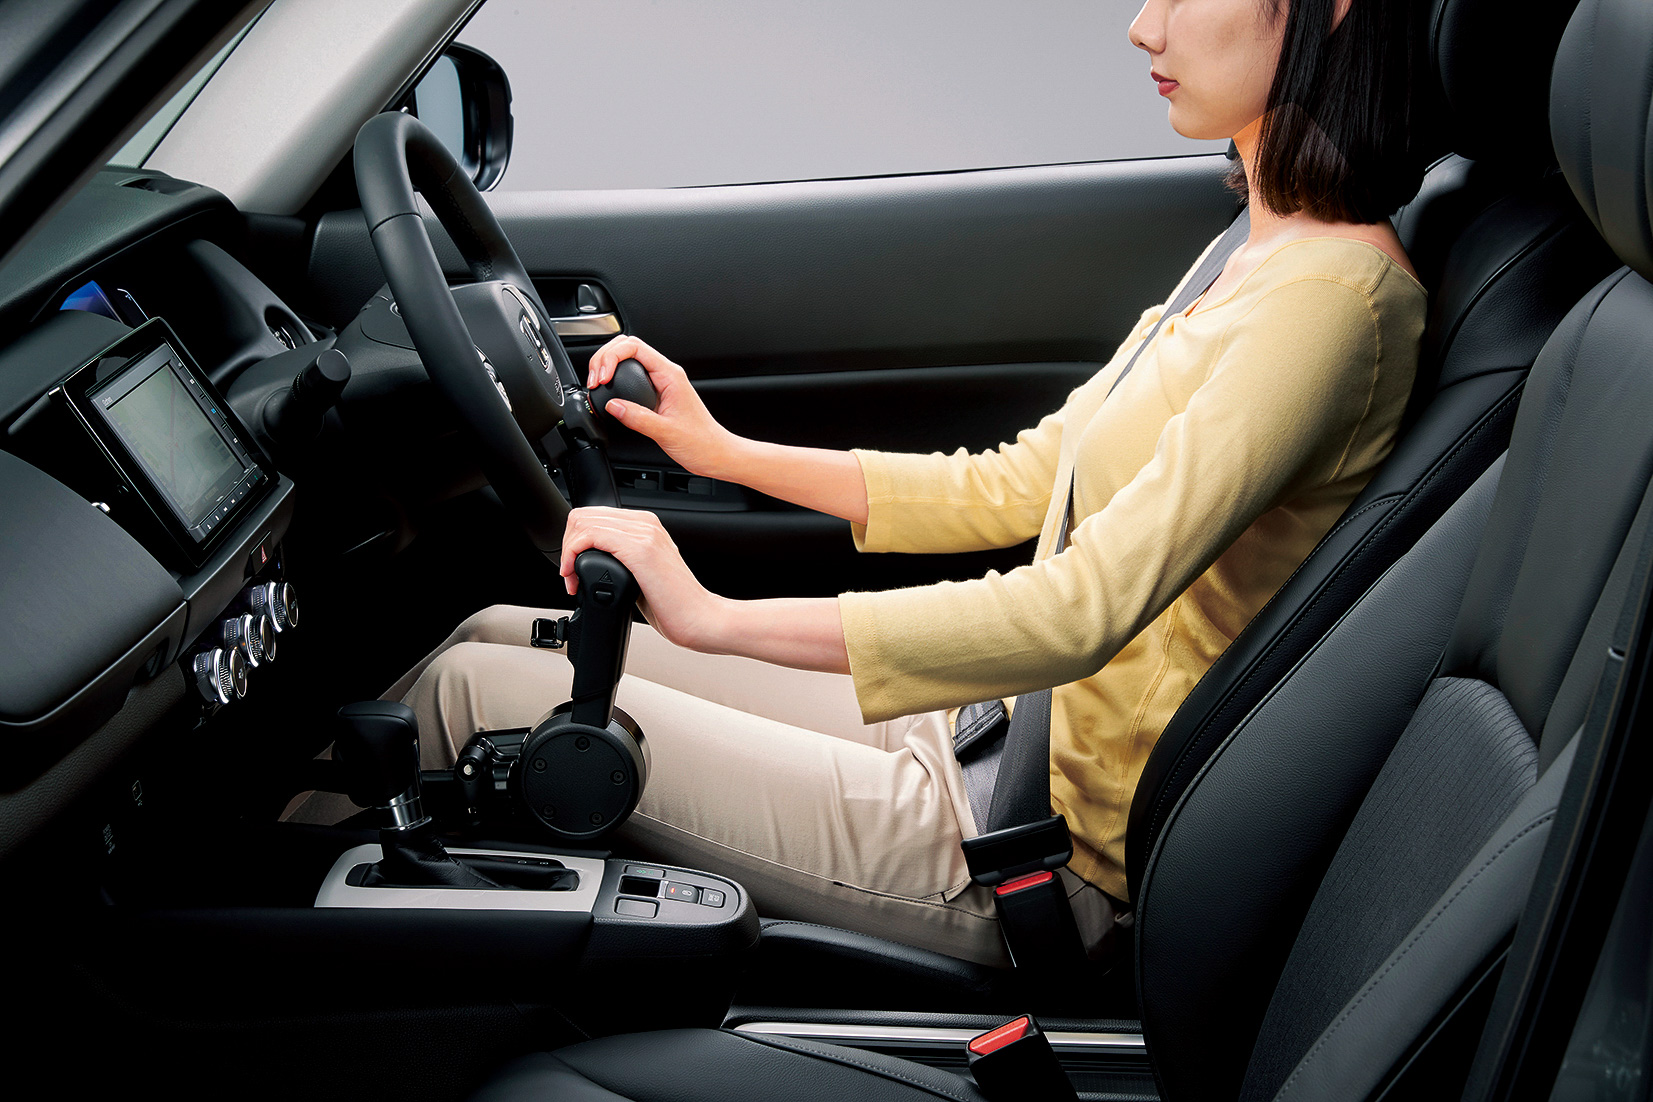 ホンダアクセス 新型 フィット 用運転補助装置 テックマチックシステム Car Watch